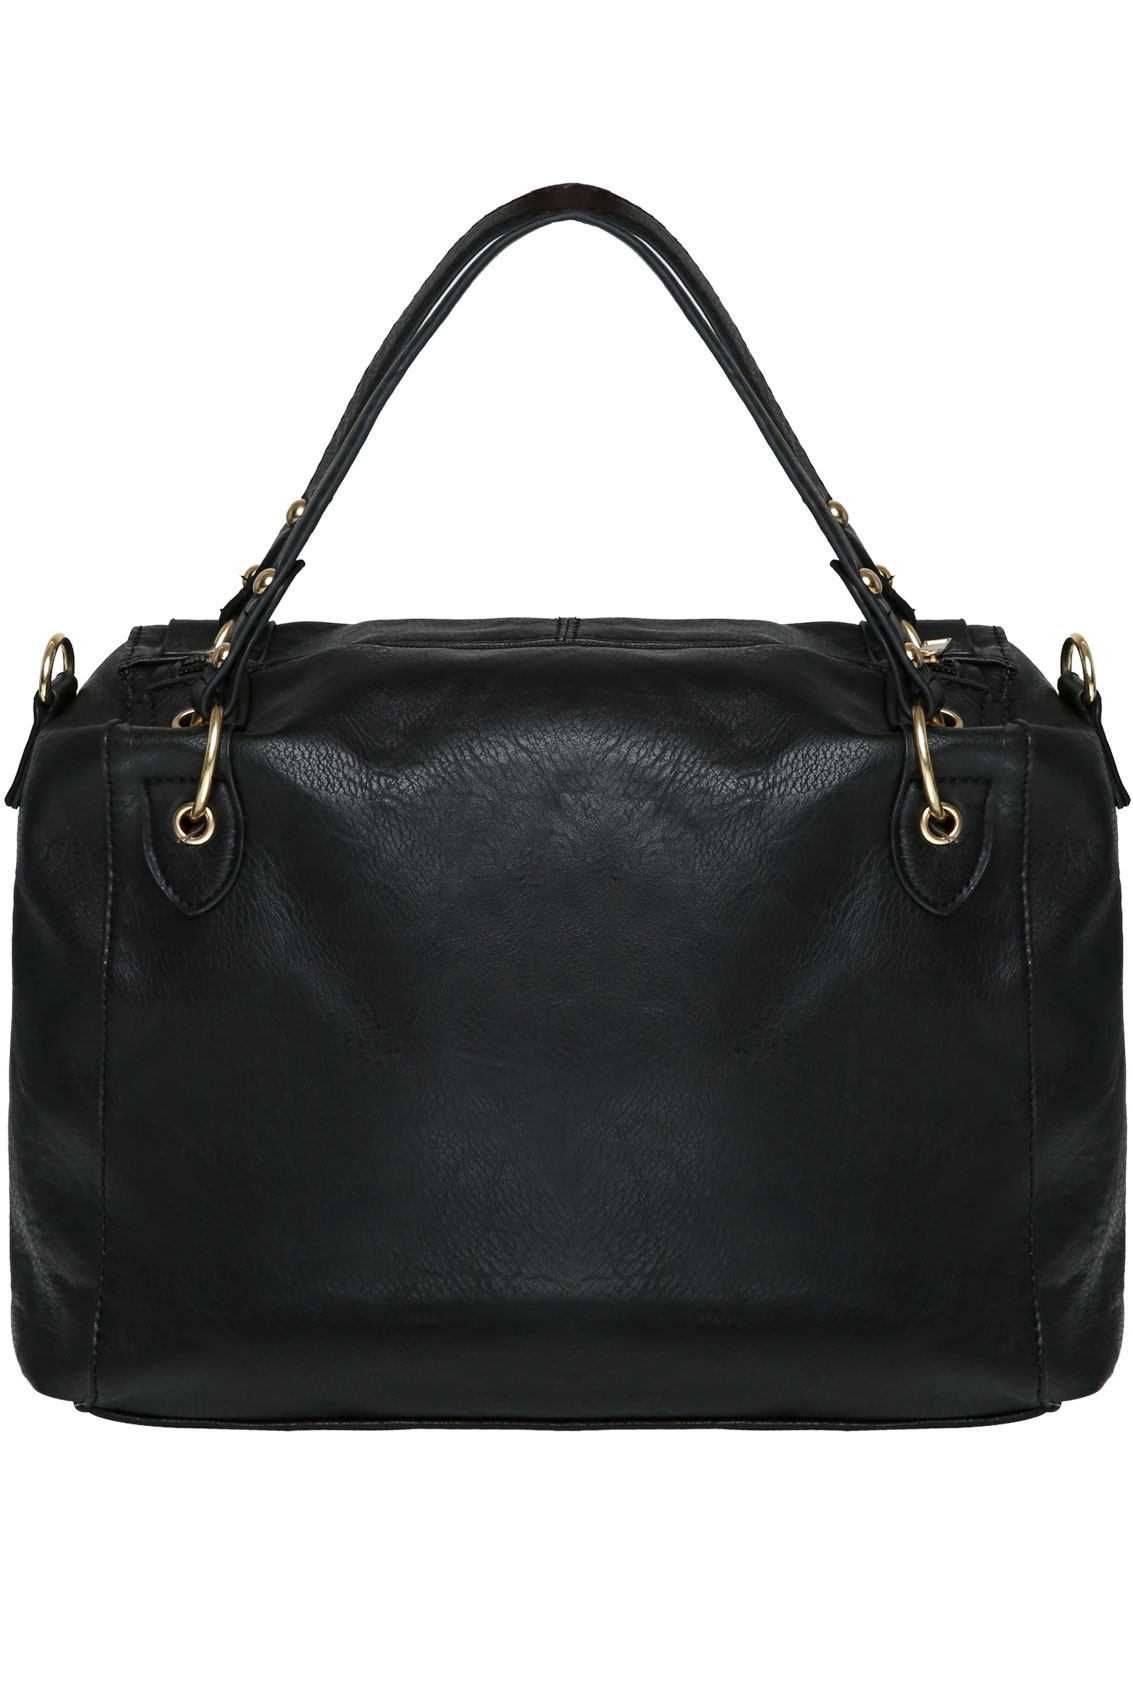 Black Leather Look Handbag With Shoulder Strap